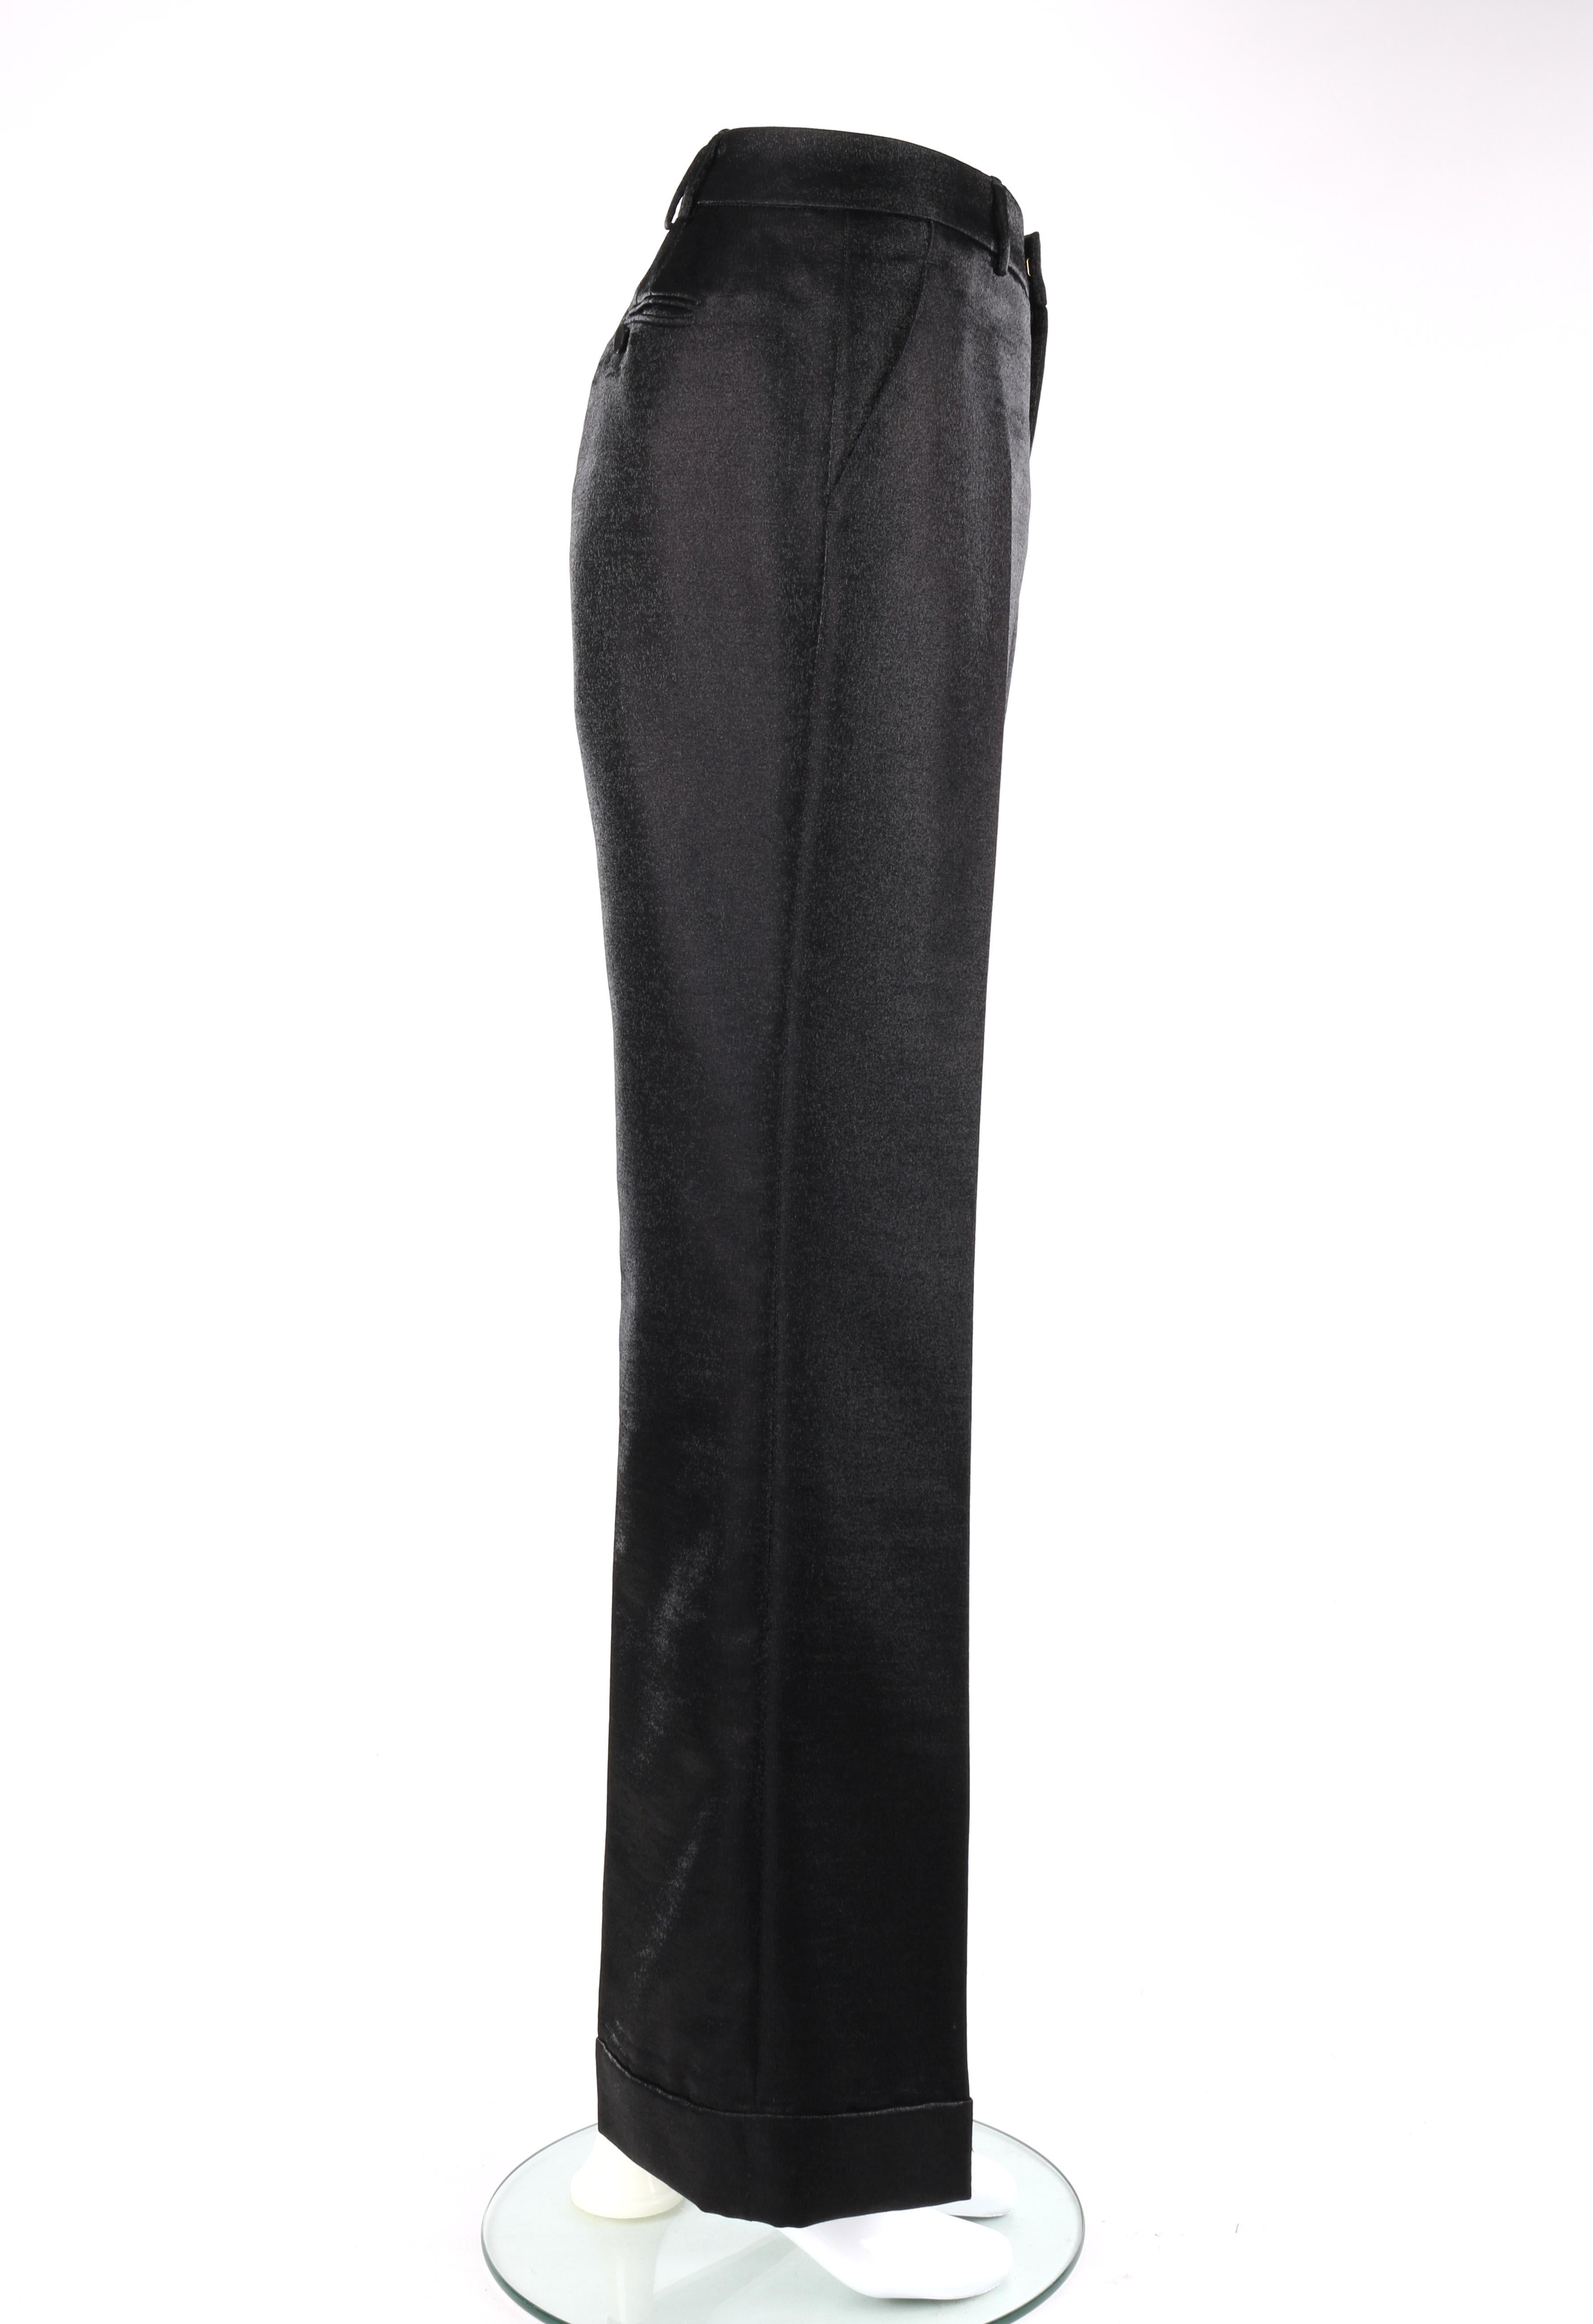 Women's GUCCI A/W 2006 2pc Black Metallic Satin Blazer & Wide Leg Trouser Pant Suit Set